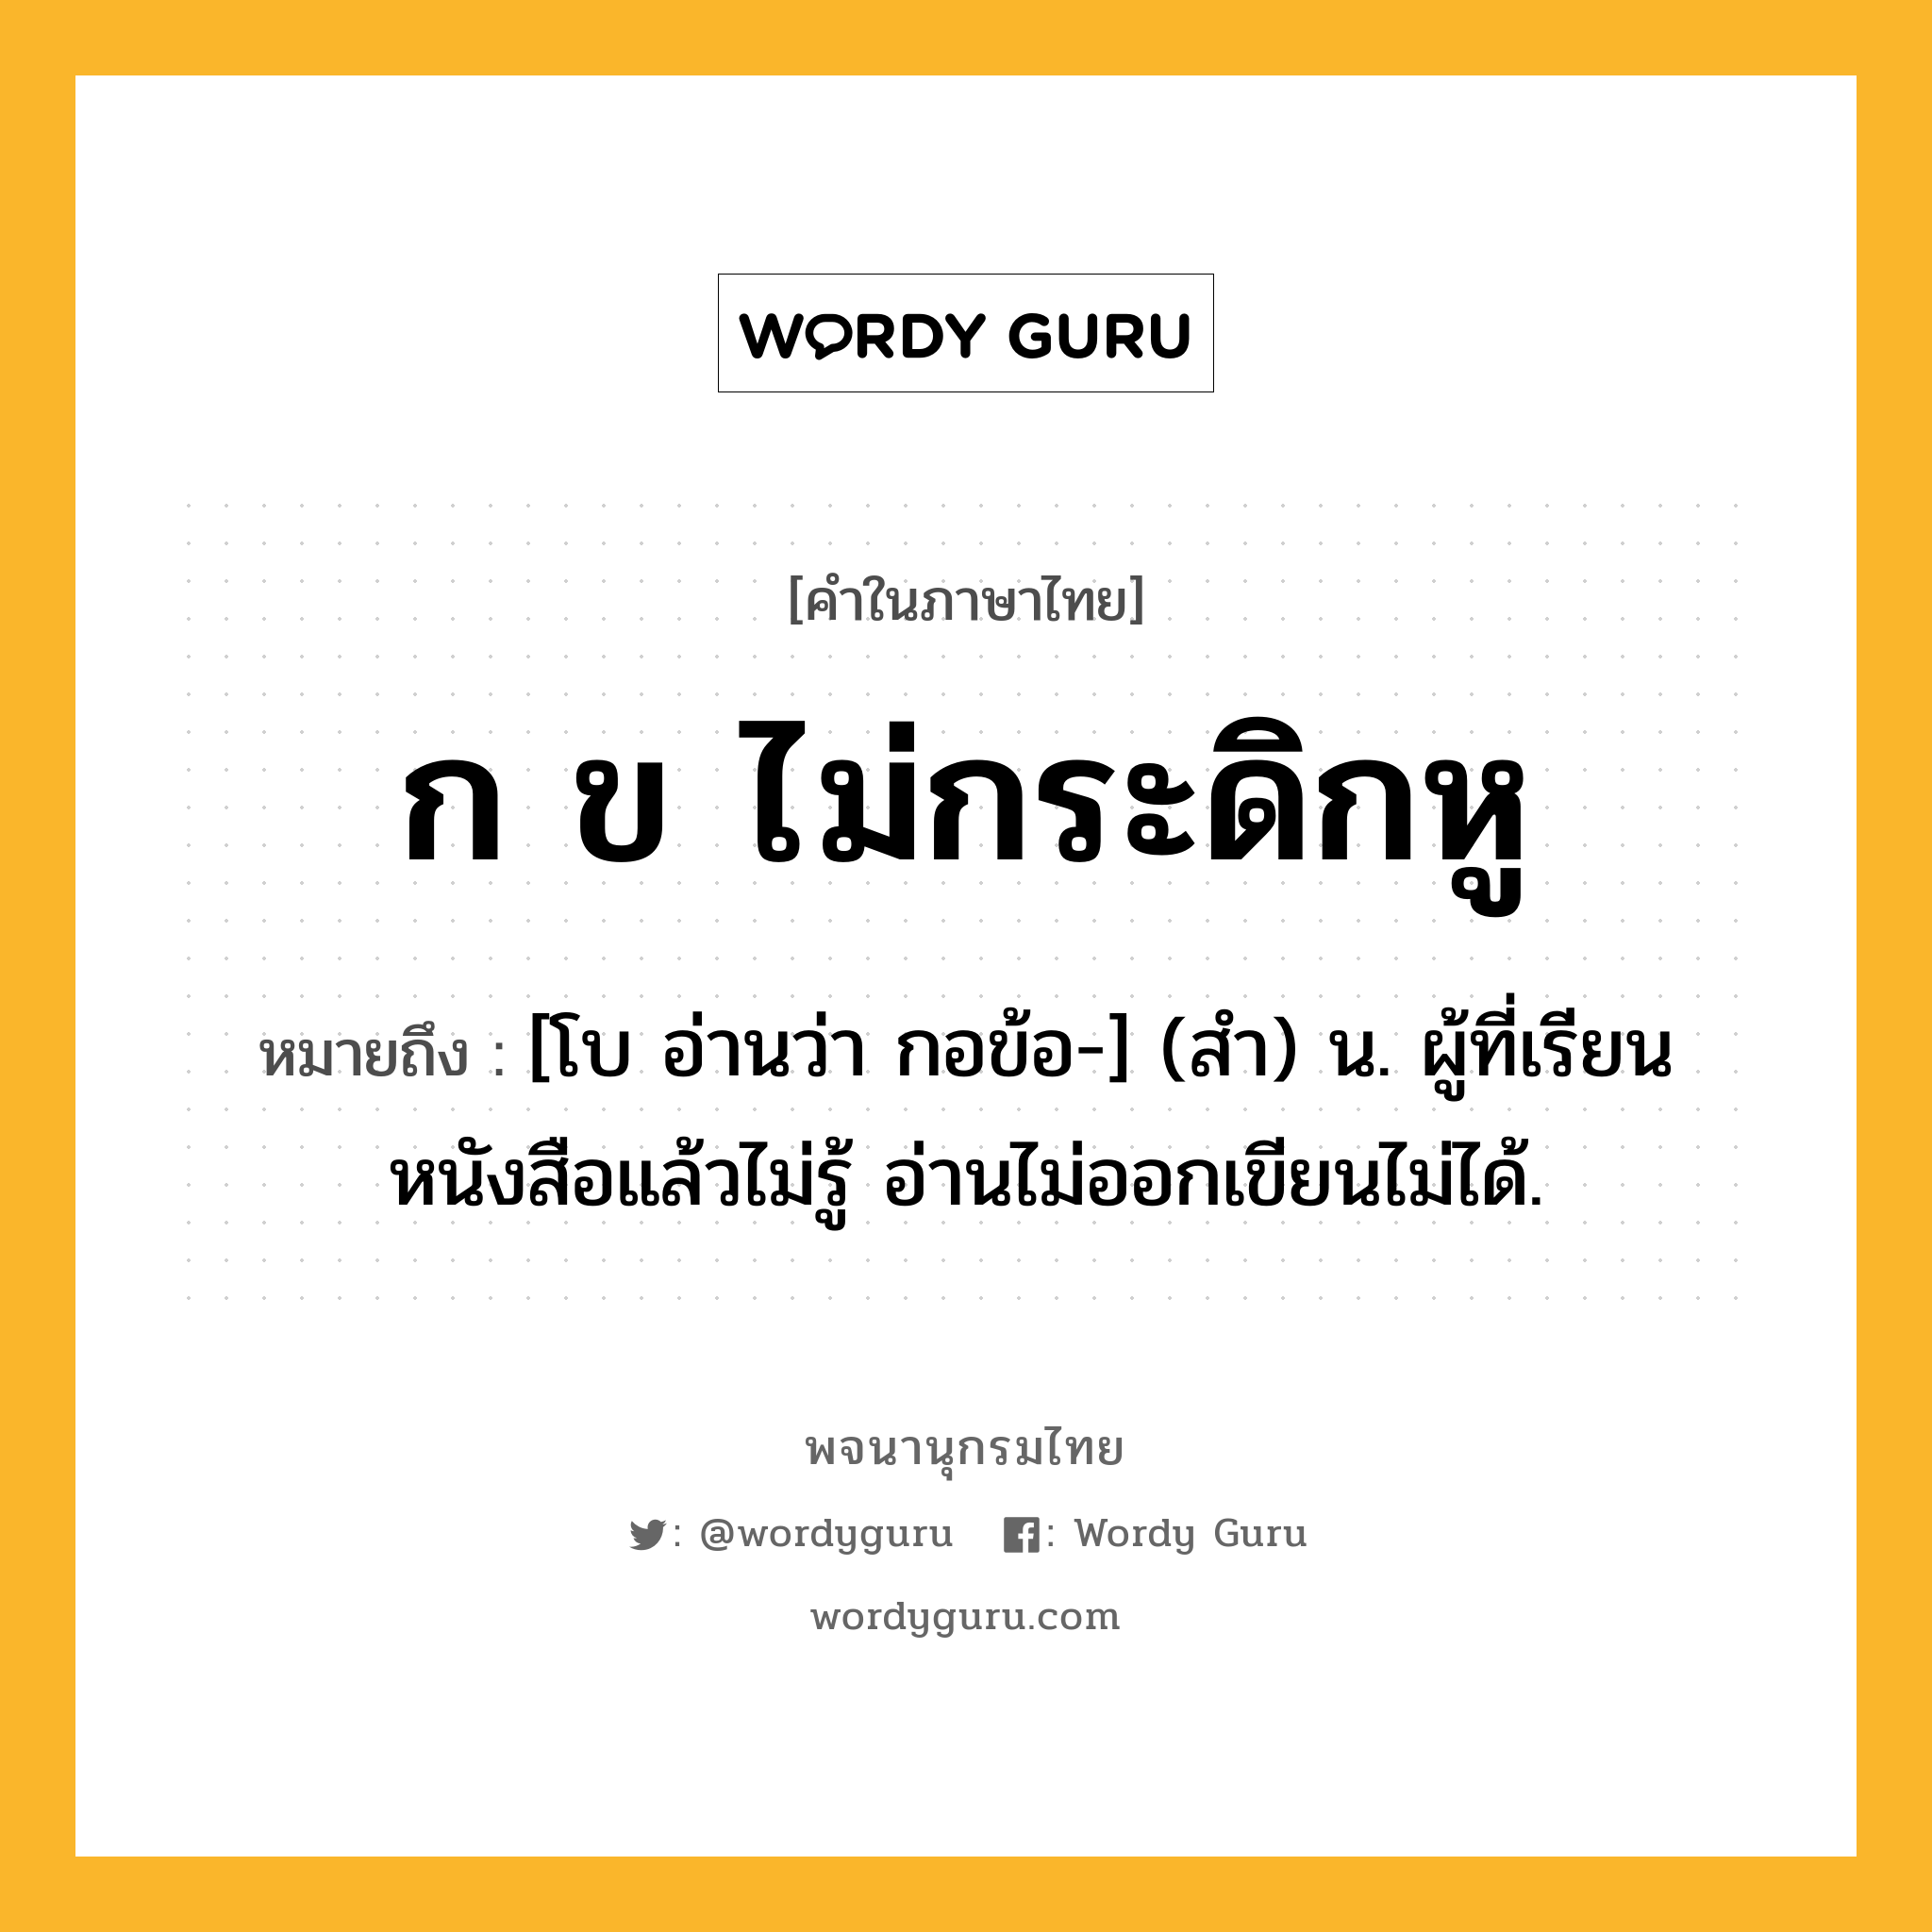 ก ข ไม่กระดิกหู หมายถึงอะไร?, คำในภาษาไทย ก ข ไม่กระดิกหู หมายถึง [โบ อ่านว่า กอข้อ-] (สํา) น. ผู้ที่เรียนหนังสือแล้วไม่รู้ อ่านไม่ออกเขียนไม่ได้.